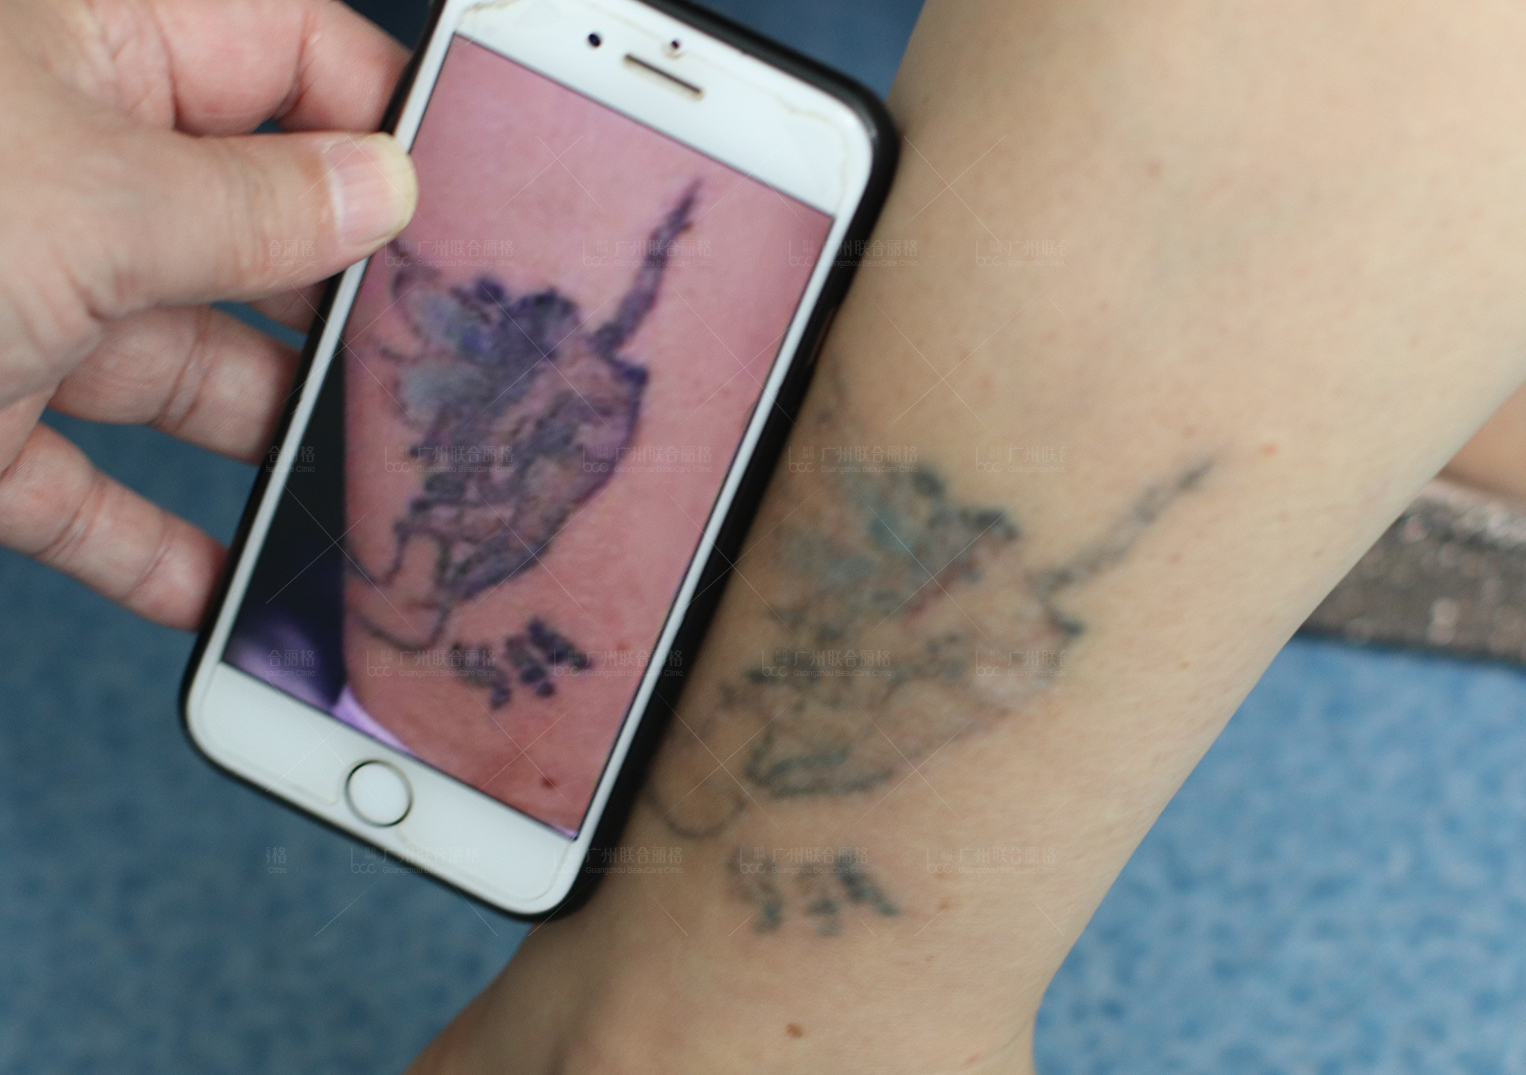 我爱罗纹身皮秒洗纹身效果对比案例 - 皮秒激光洗纹身案例 武汉老兵纹身